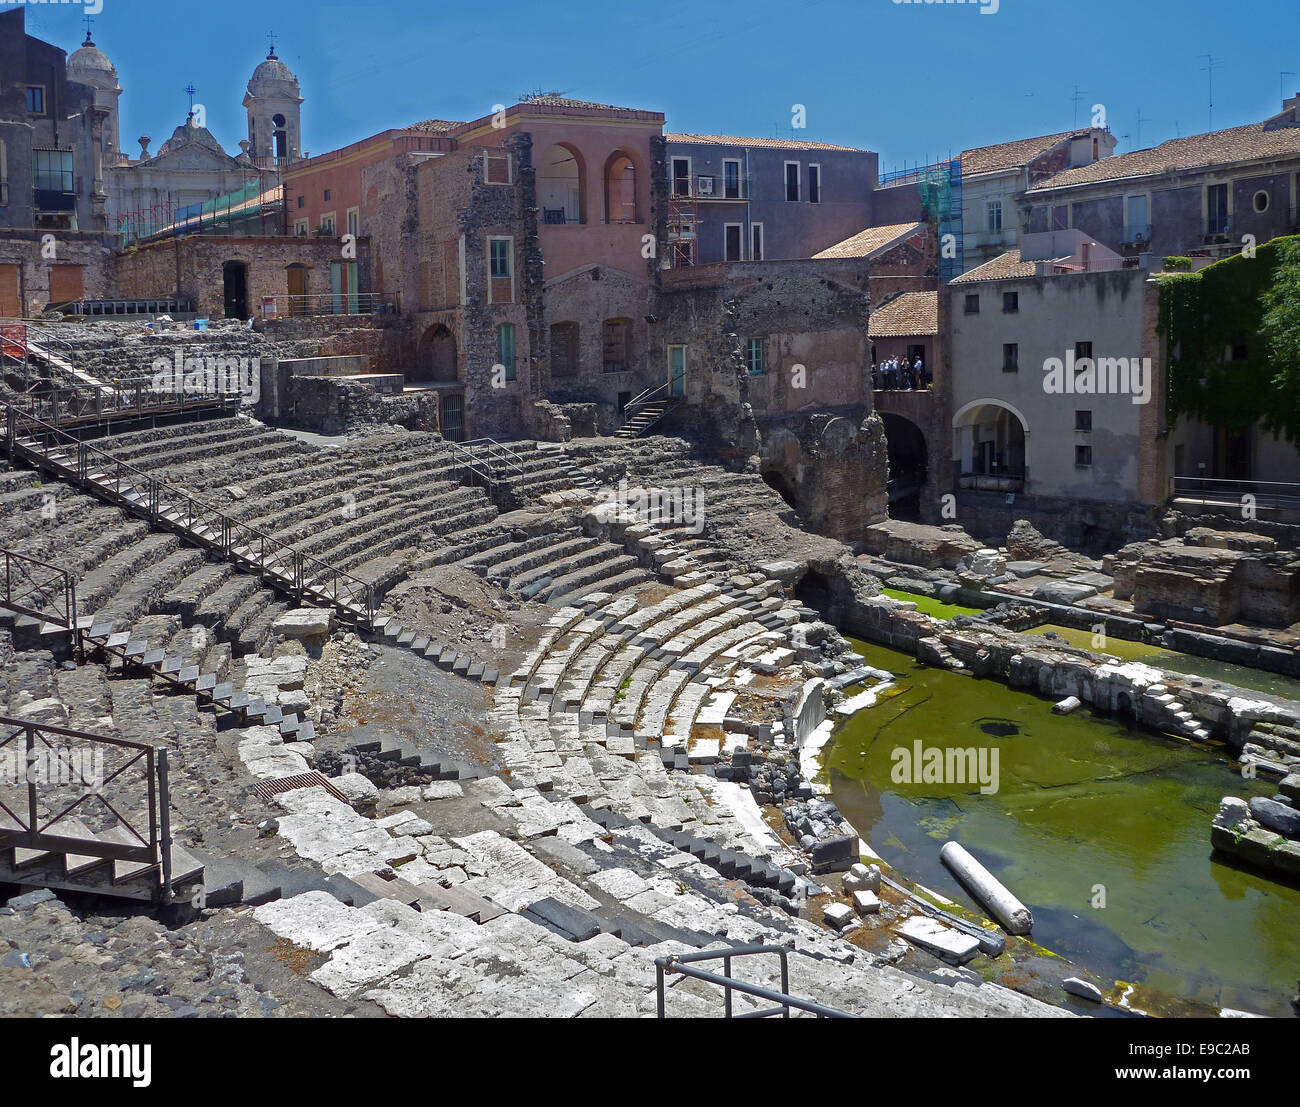 Das römische Amphitheater befindet sich am Rande der antiken Akropolis. Es steht auf den Fundamenten des antiken griechischen Theaters. Guter Zustand, die Zimmer sind im Keller. Ein Stream bietet heute für Wasserspiele Wasser benötigt wurde. -Juni 2014 Stockfoto